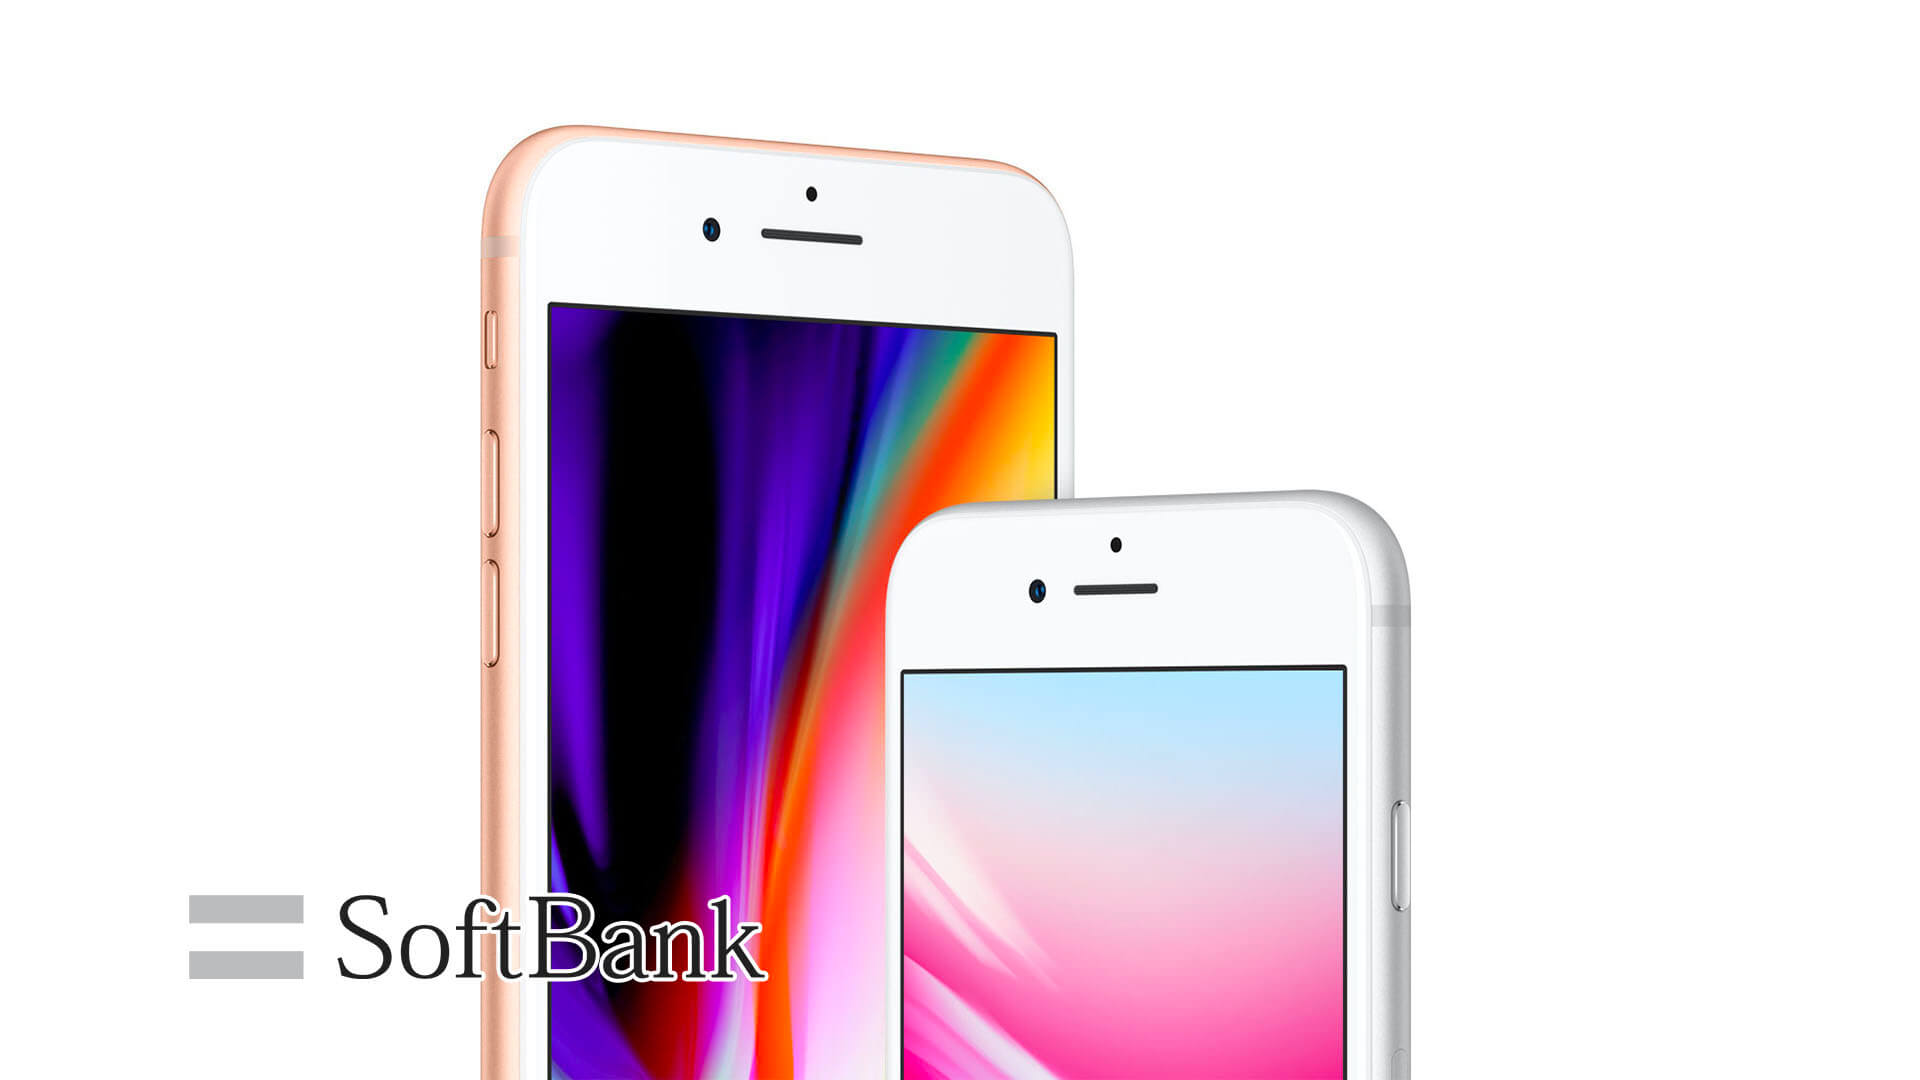 ソフトバンク、iPhone 8 / iPhone 8 Plusの料金を発表。実質価格は1.7万円から